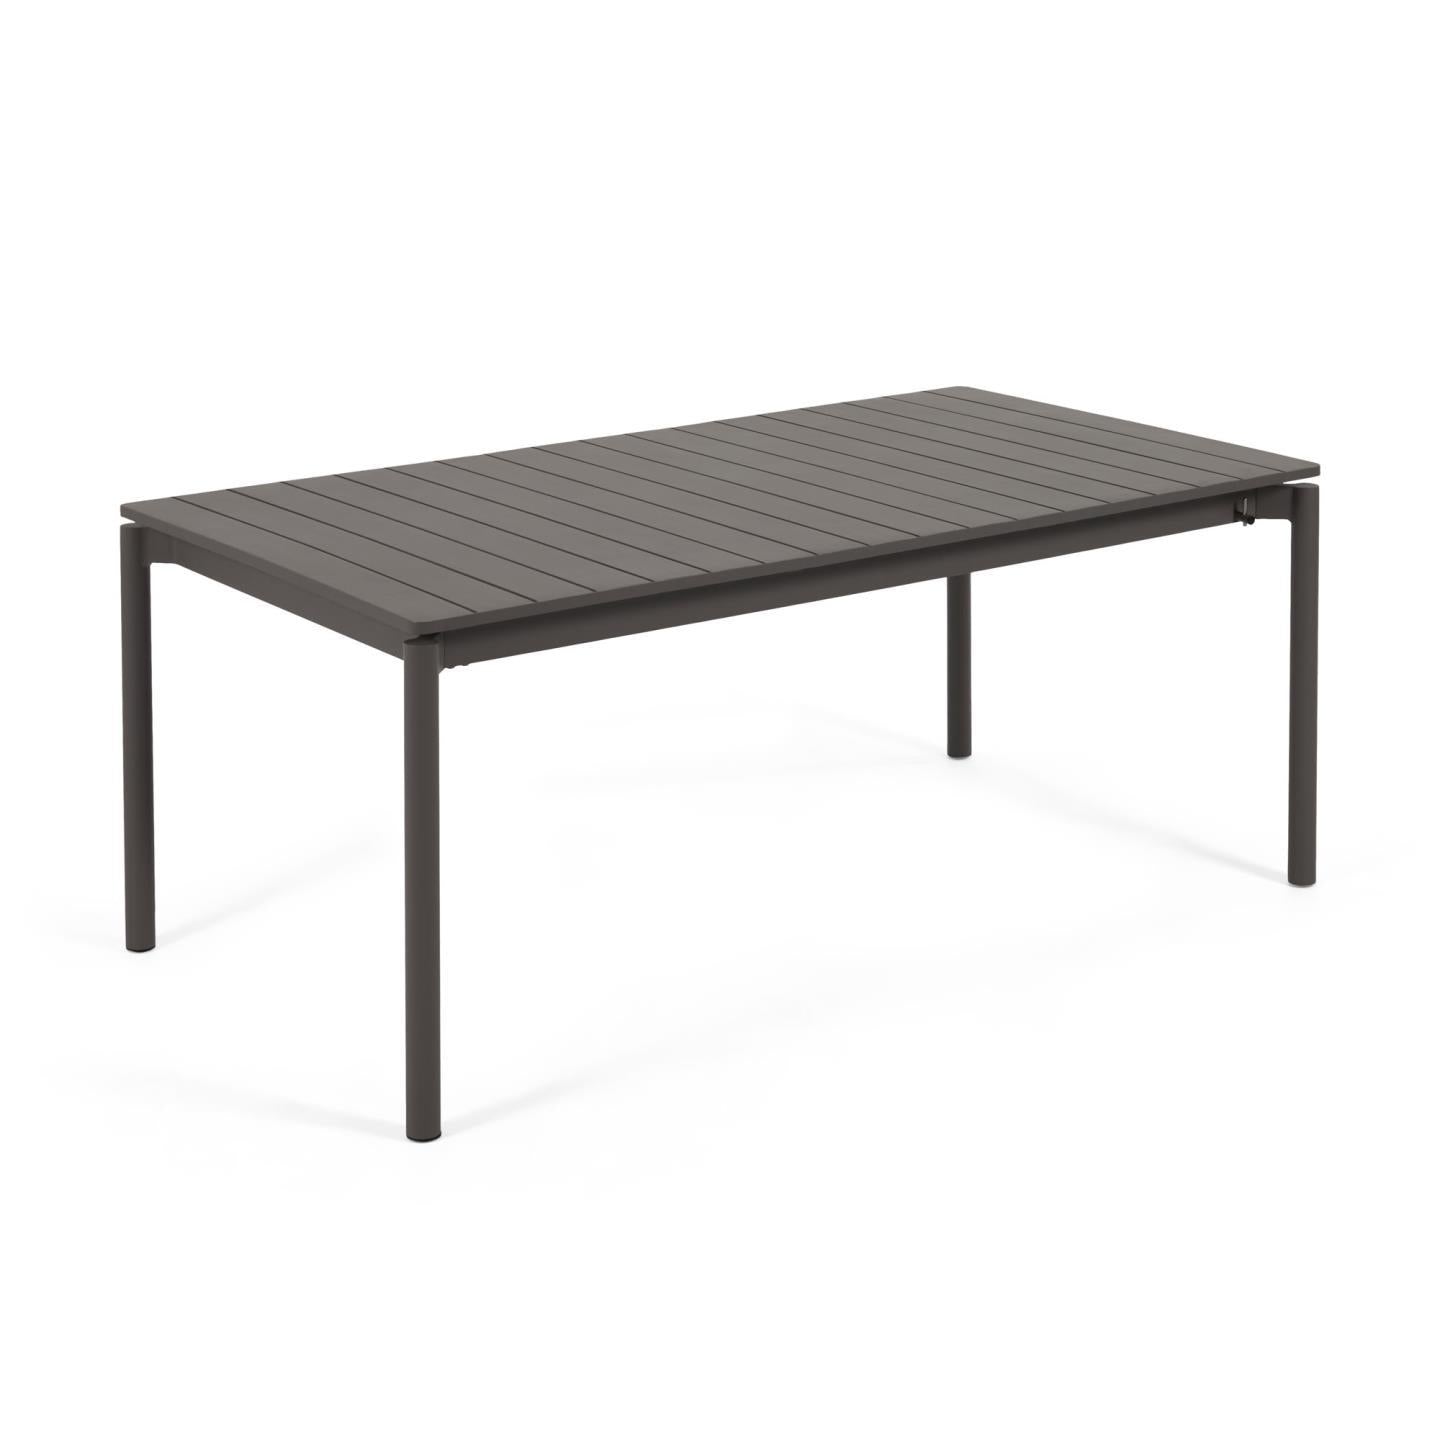 Zaltana kihúzható alumínium kültéri asztal matt fekete kivitelben 180 (240) x 100 cm